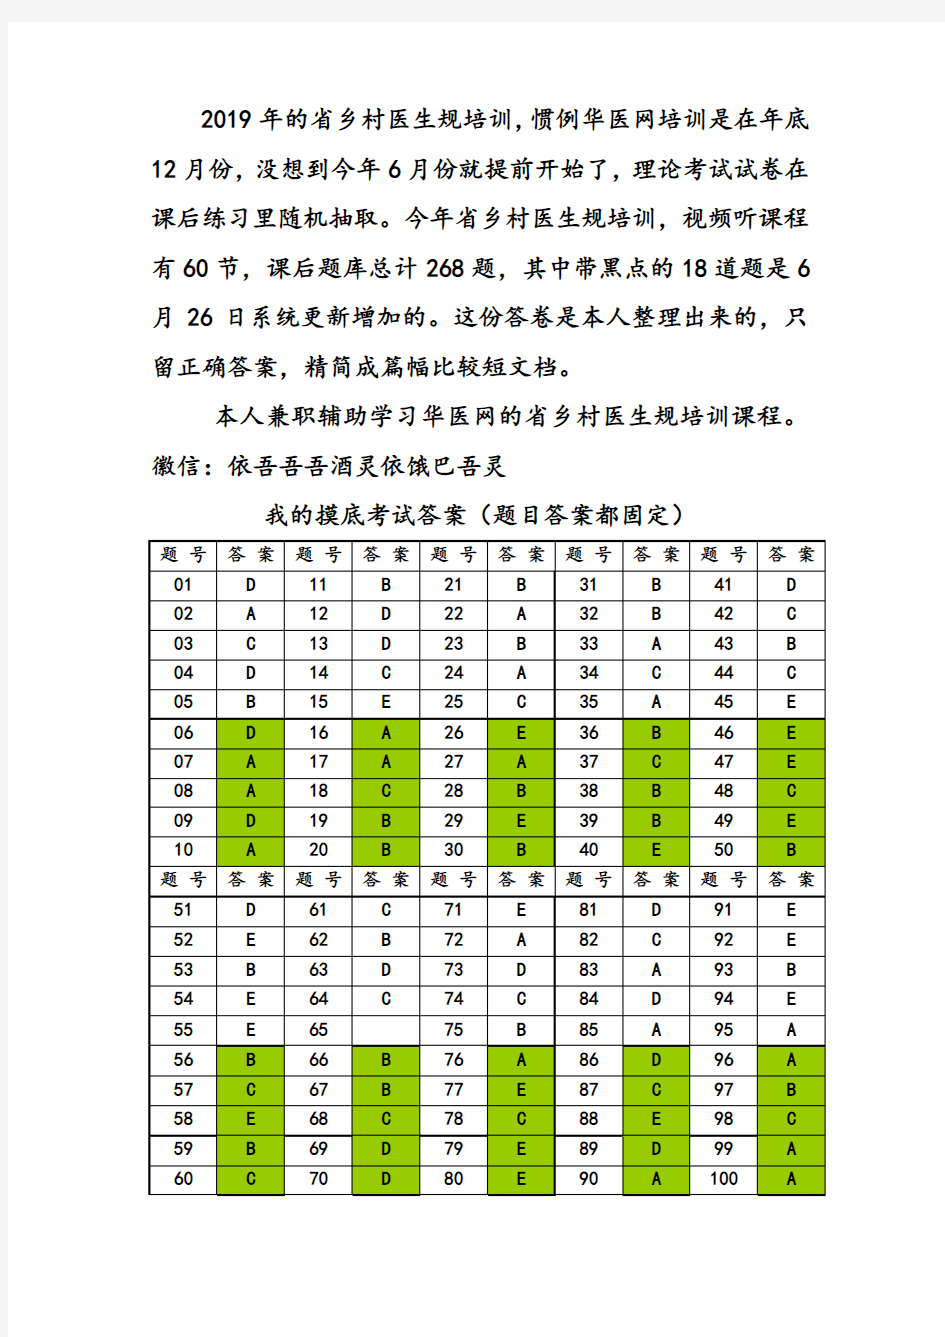 2019年福建省乡村医生要求要求规范培训理论考试和课后习题材料更新版